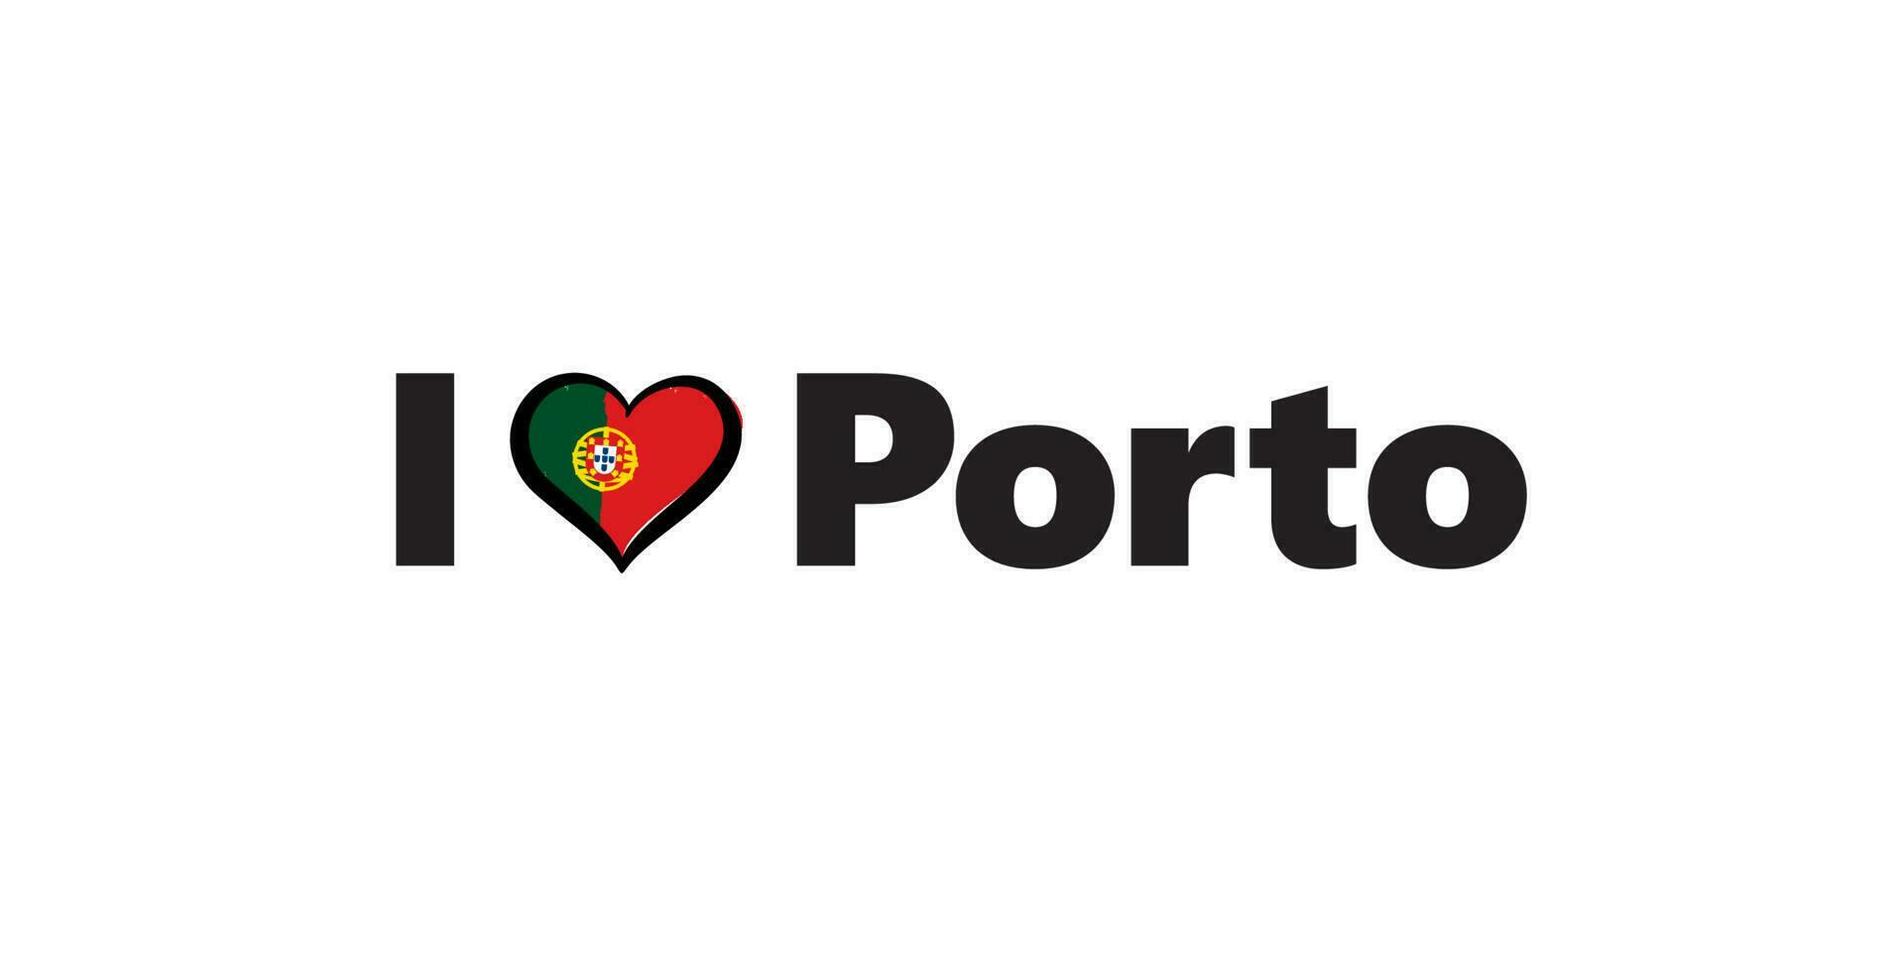 Portugal stad porto horizontaal spandoek. belettering ik liefde porto met nacional Portugees vlag en liefde hart. vector sjabloon voor uw ontwerp.